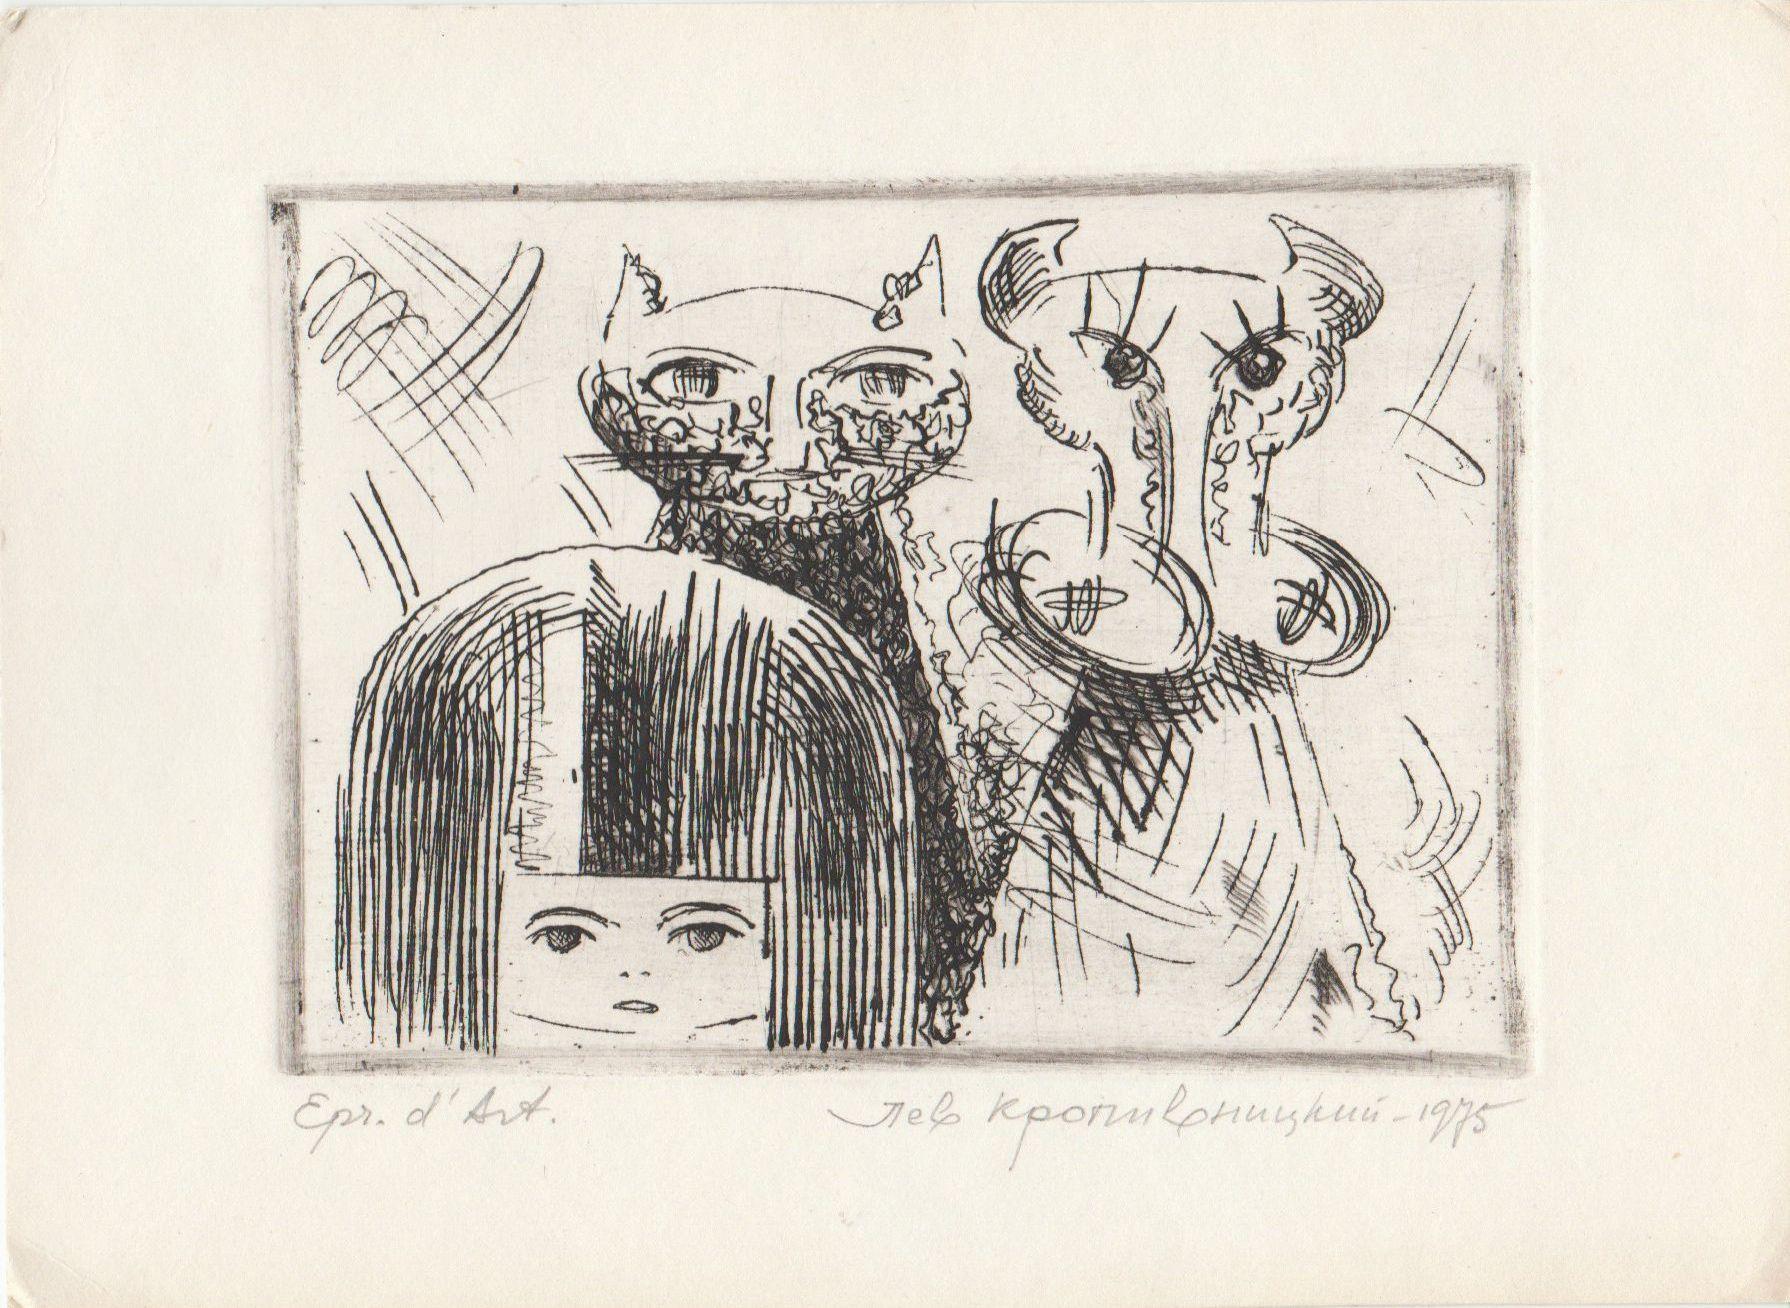 Das Mädchen, die Katze und die Kuh, 1975, Papier, Radierung, 8,5x10,5 cm – Print von Lev Kropivnitsky